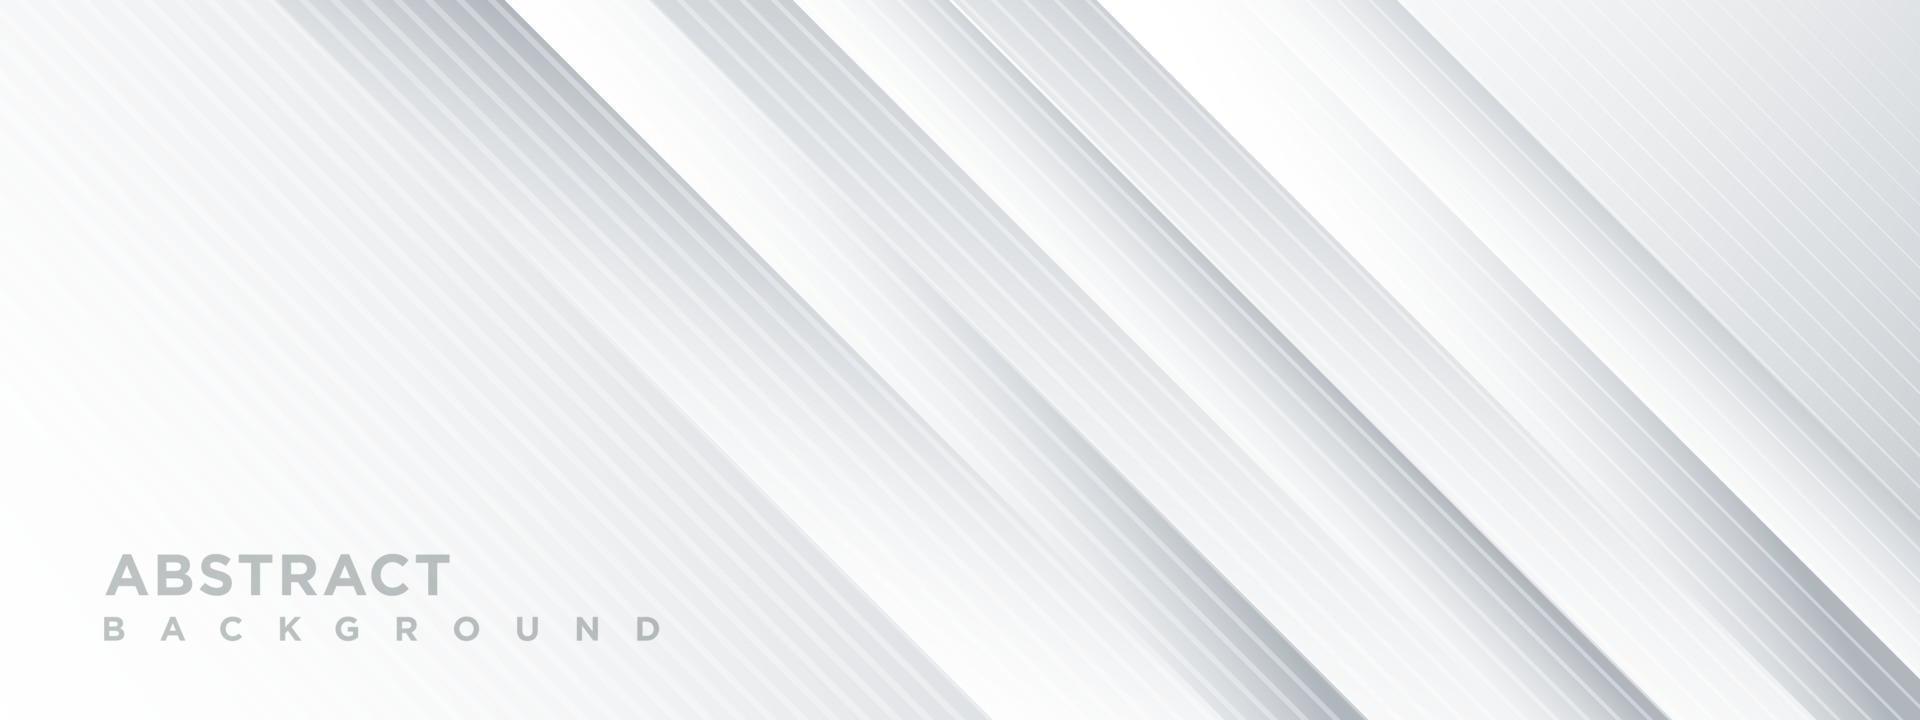 abstrakter weißer und grauer Hintergrund mit diagonalem Liniendesign. vektor